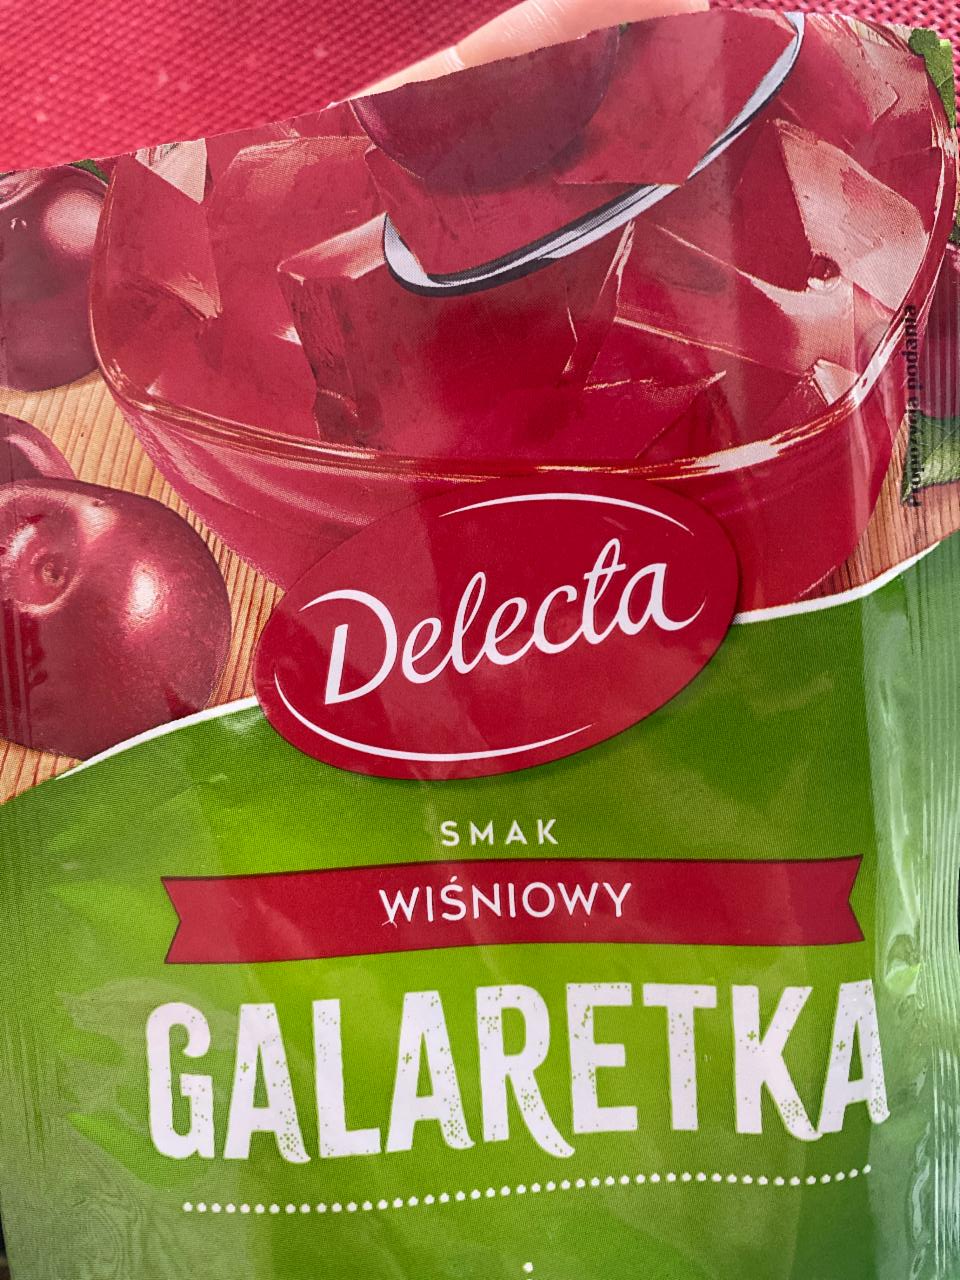 Zdjęcia - Galaretka smak wiśniowy Delecta